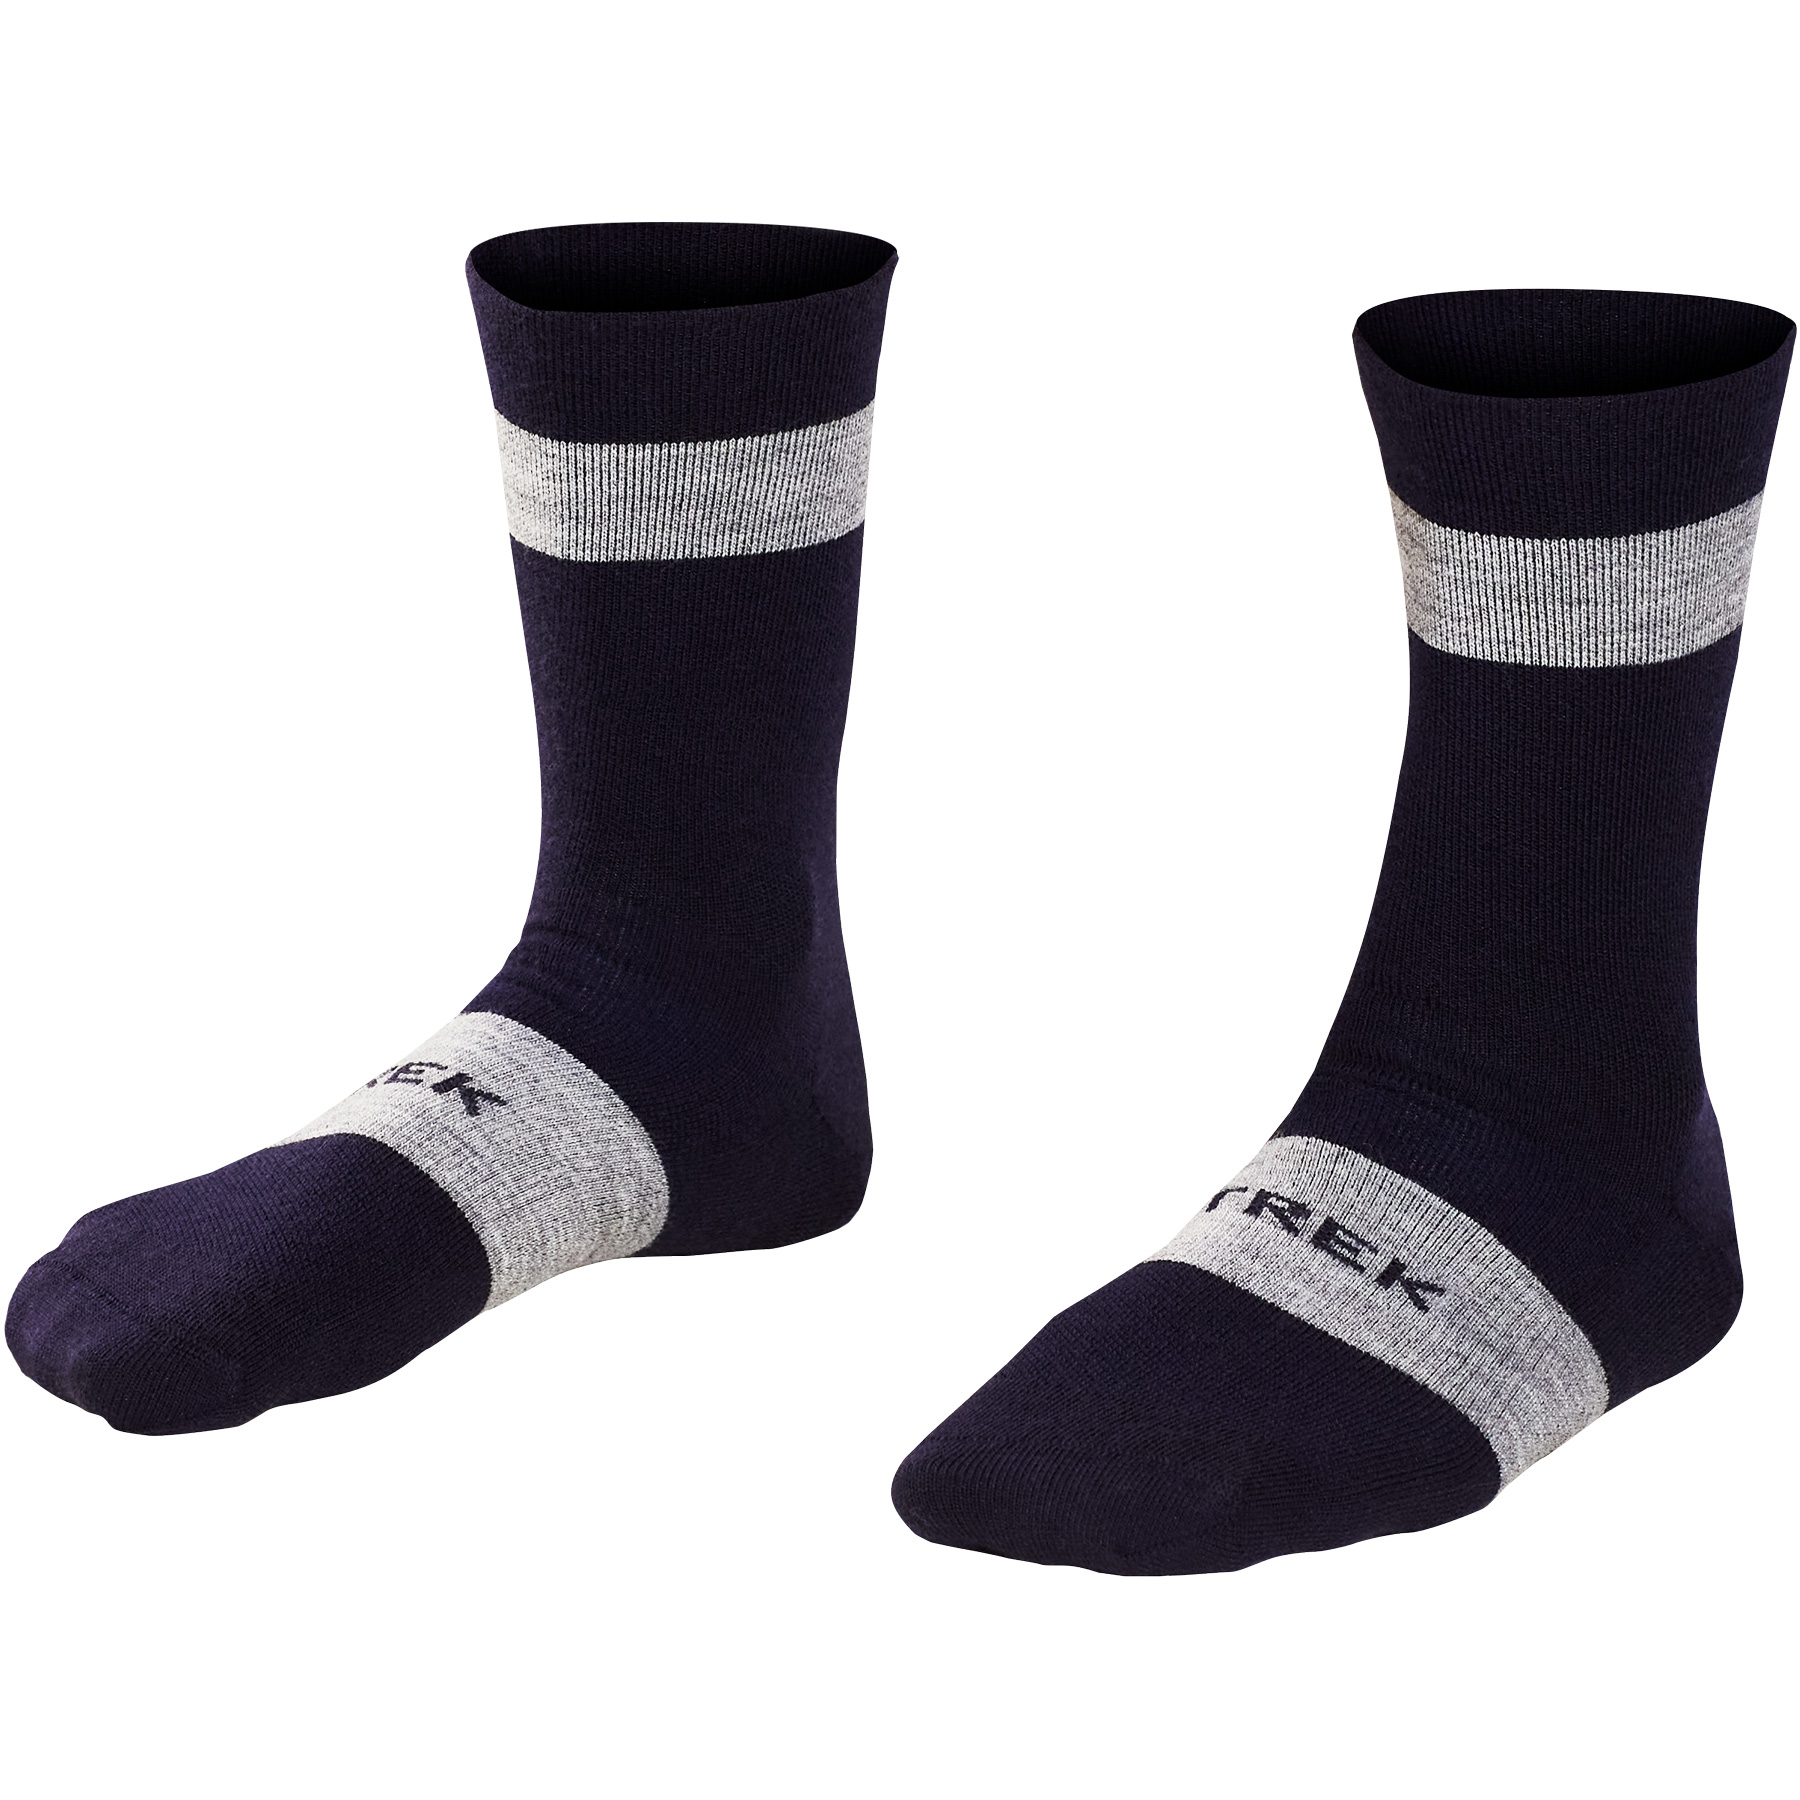 Productfoto van Trek Race Crew Merino Wool Cycling Socks - Deep Dark Blue